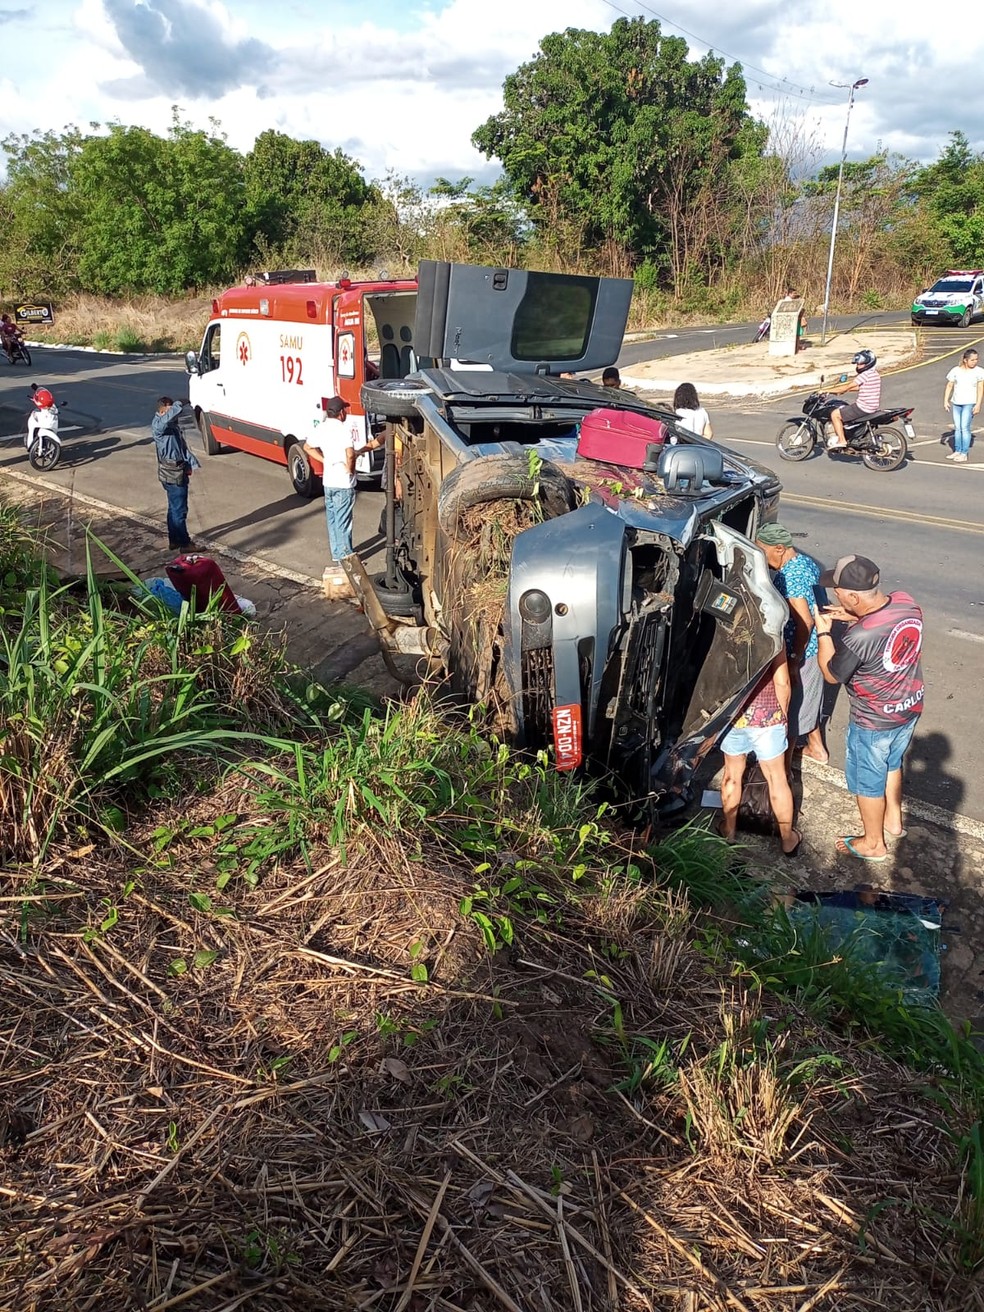 Van que transportava passageiros capota após colidir com caminhonete na BR 343, em Lagoinha no Piauí — Foto: Reprodução